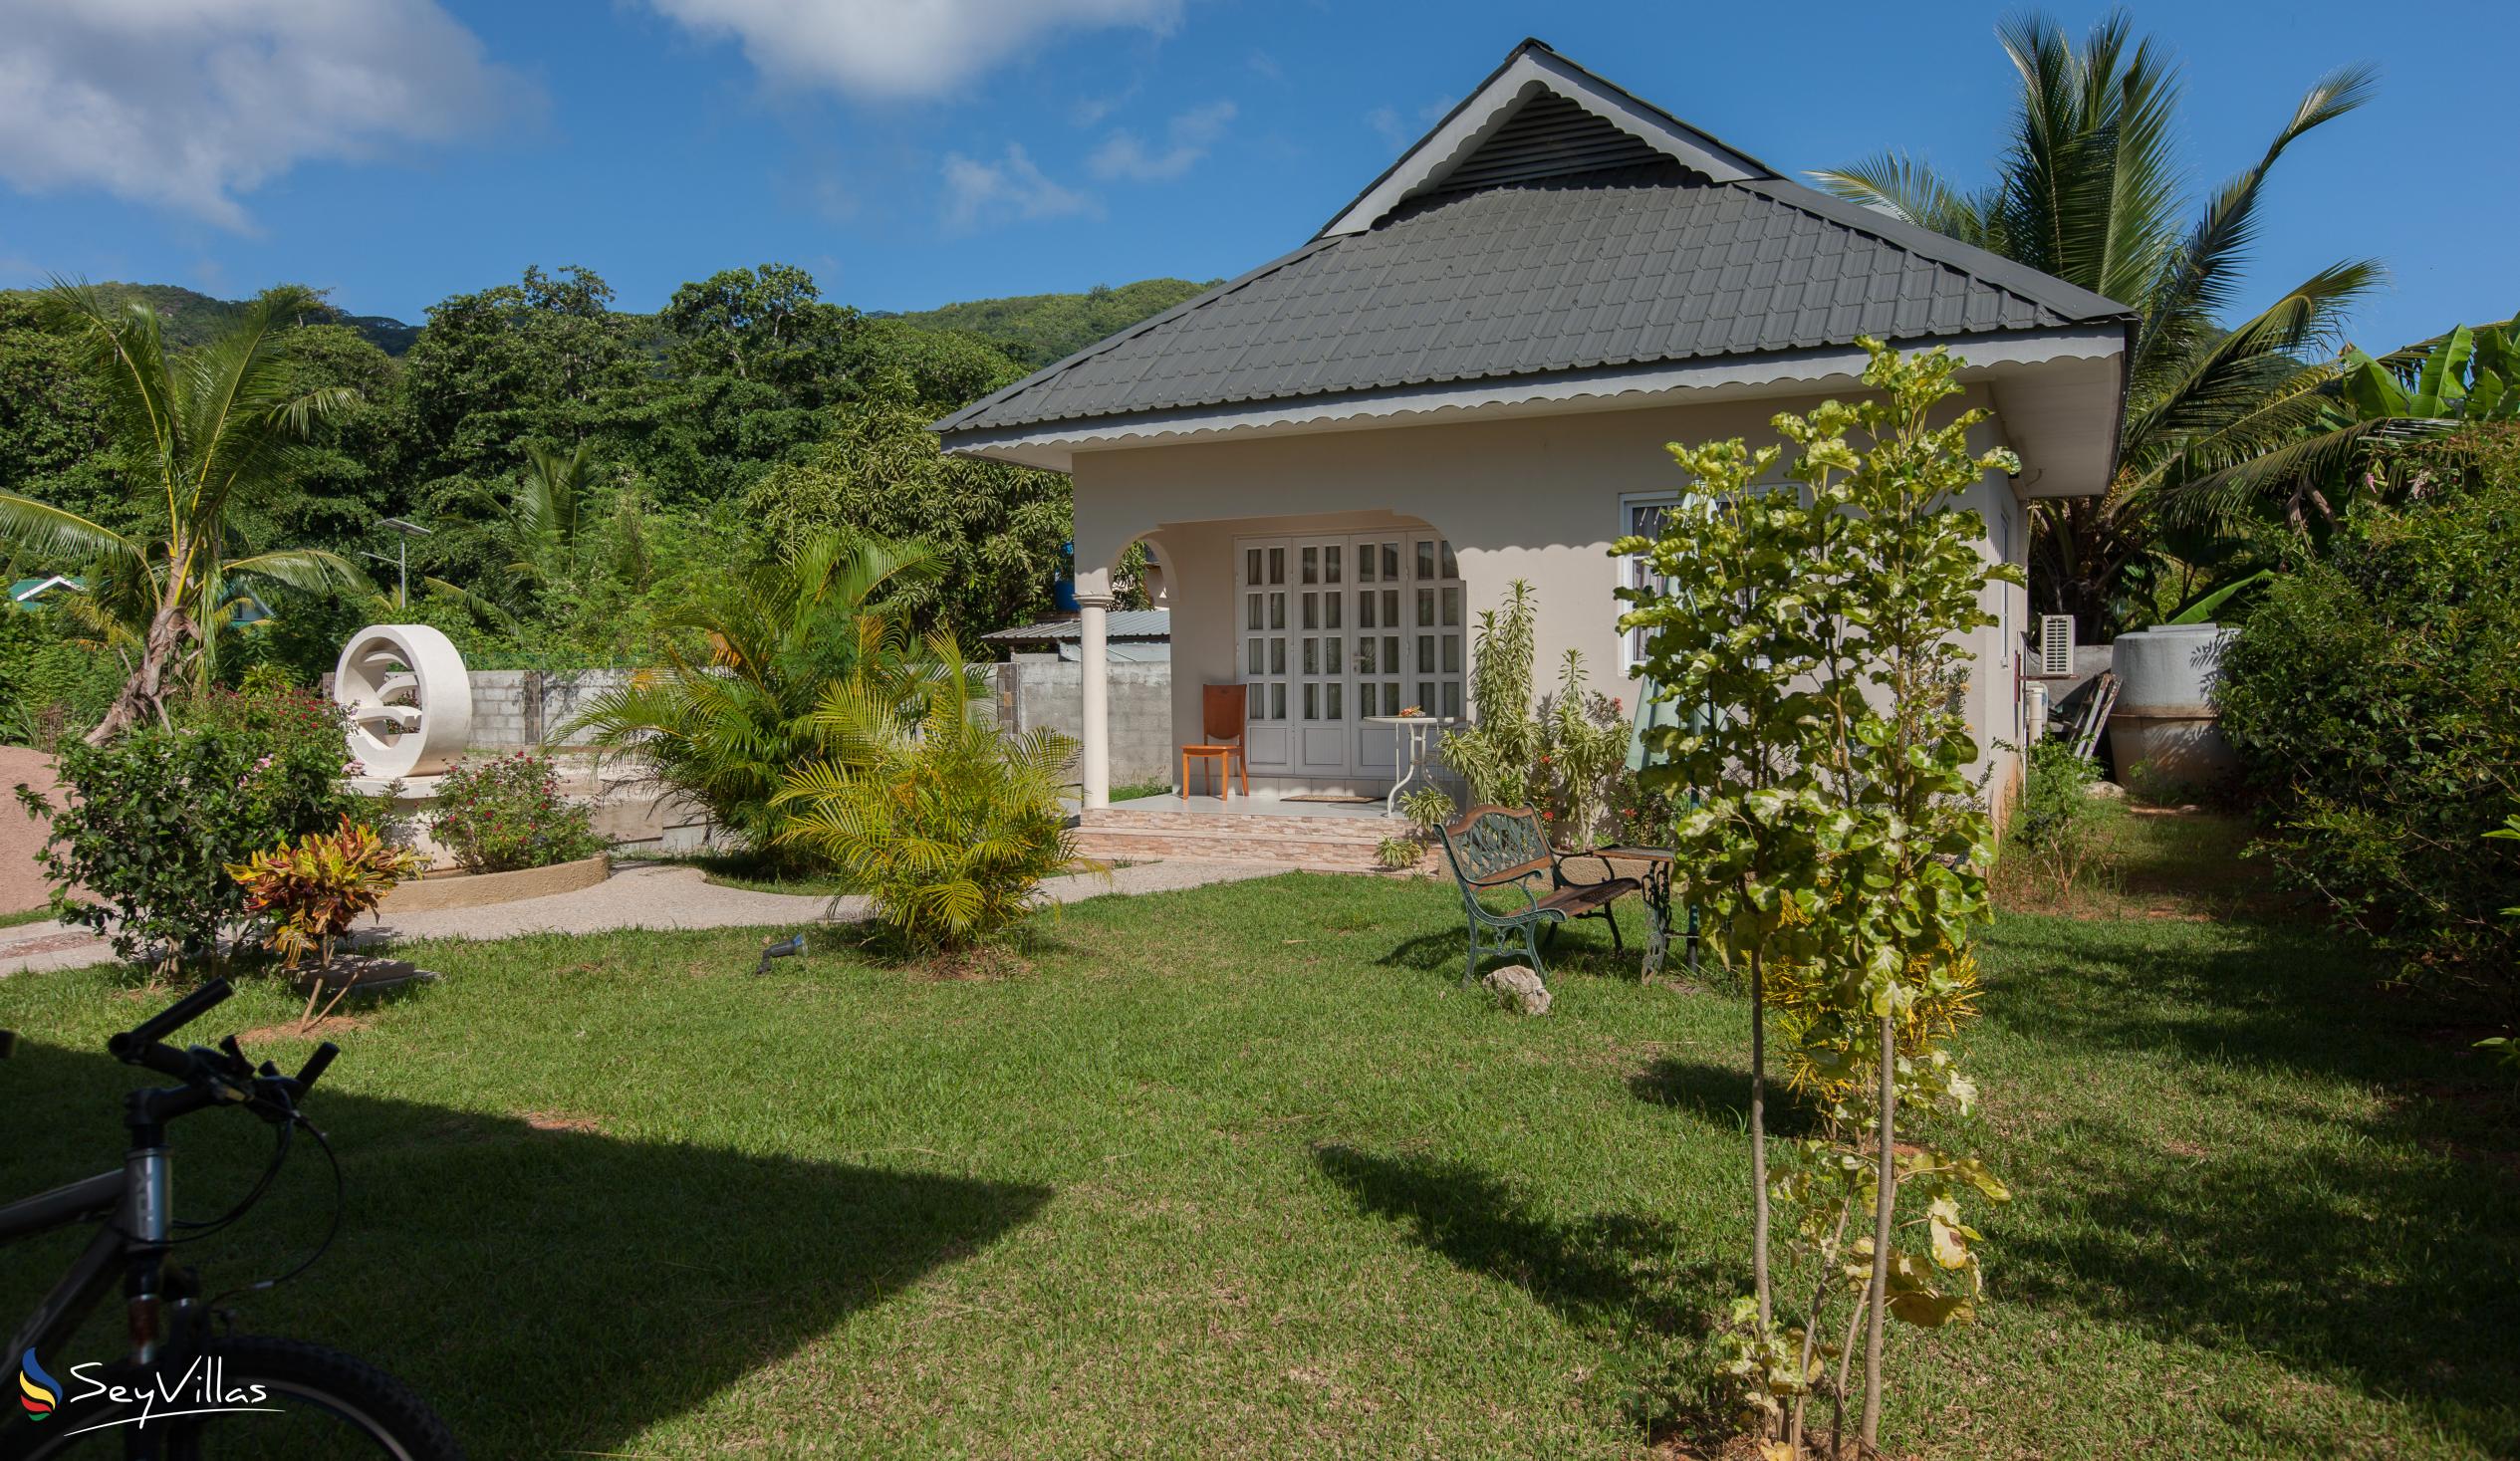 Foto 7: Villa Source D'Argent - Aussenbereich - La Digue (Seychellen)